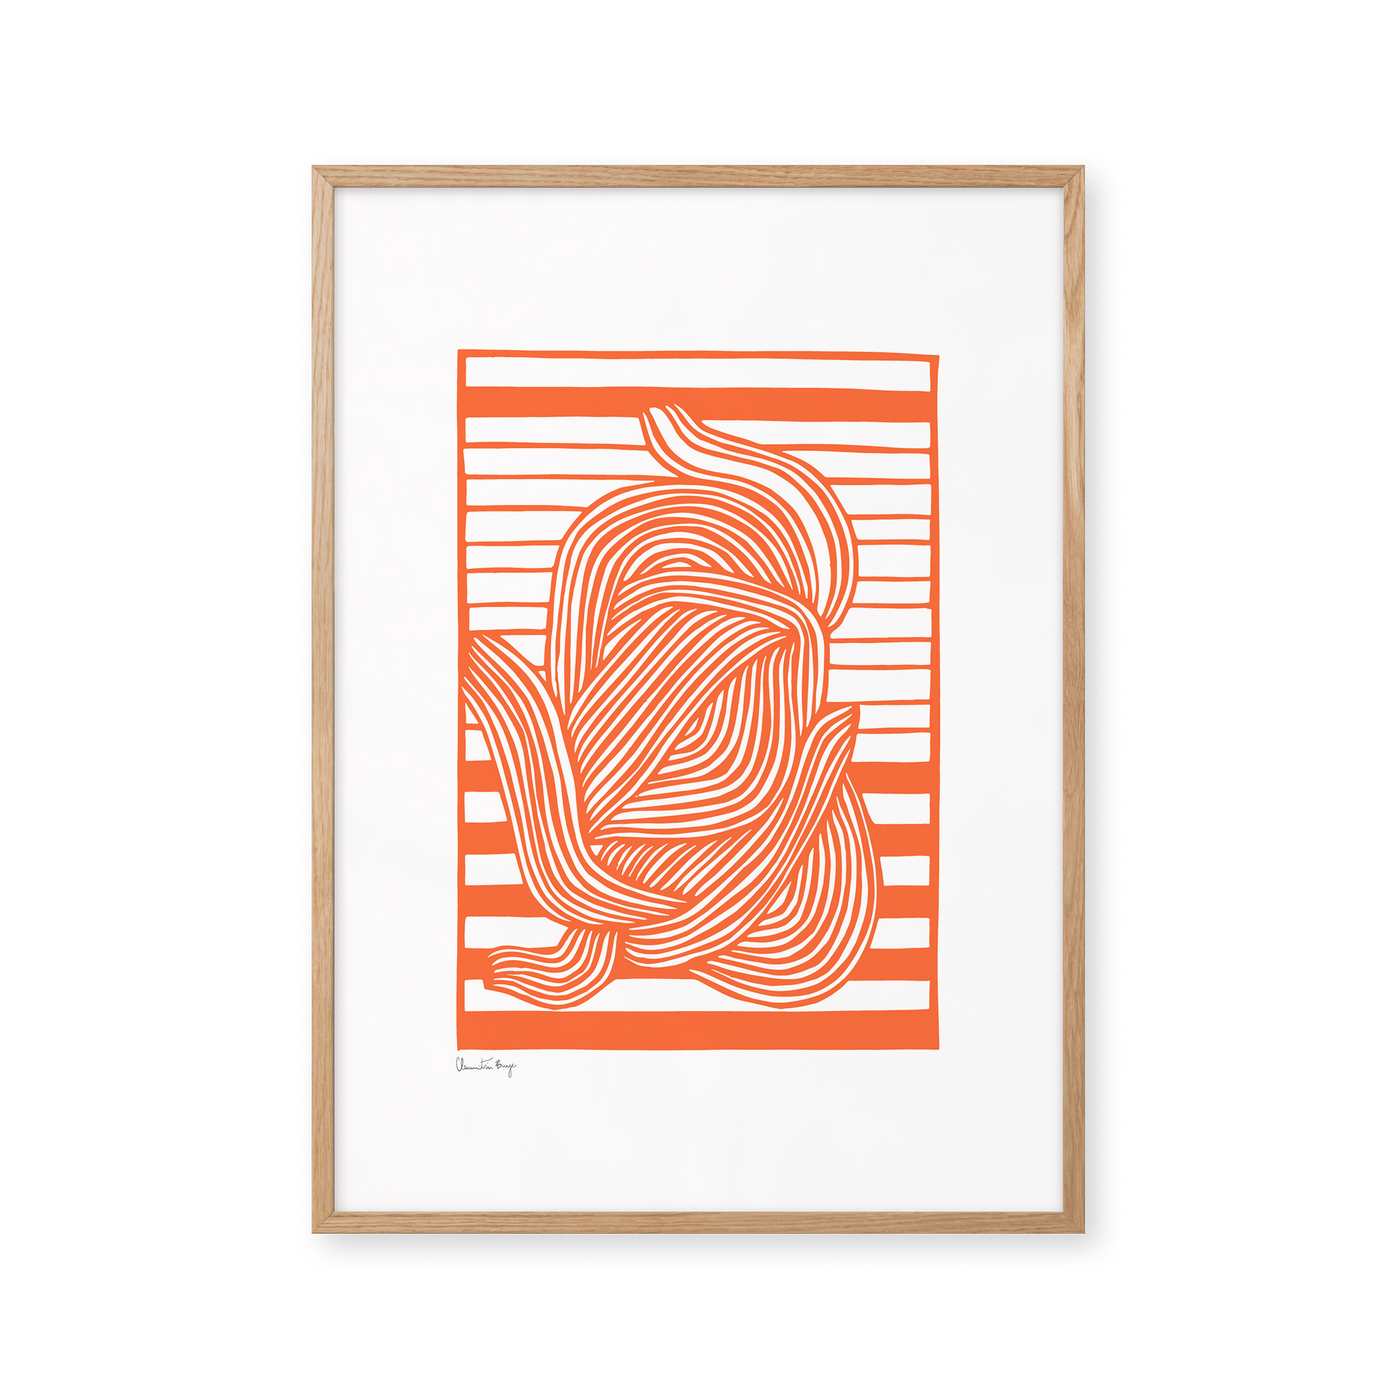 Papercut 06 - Sunkissed Orange